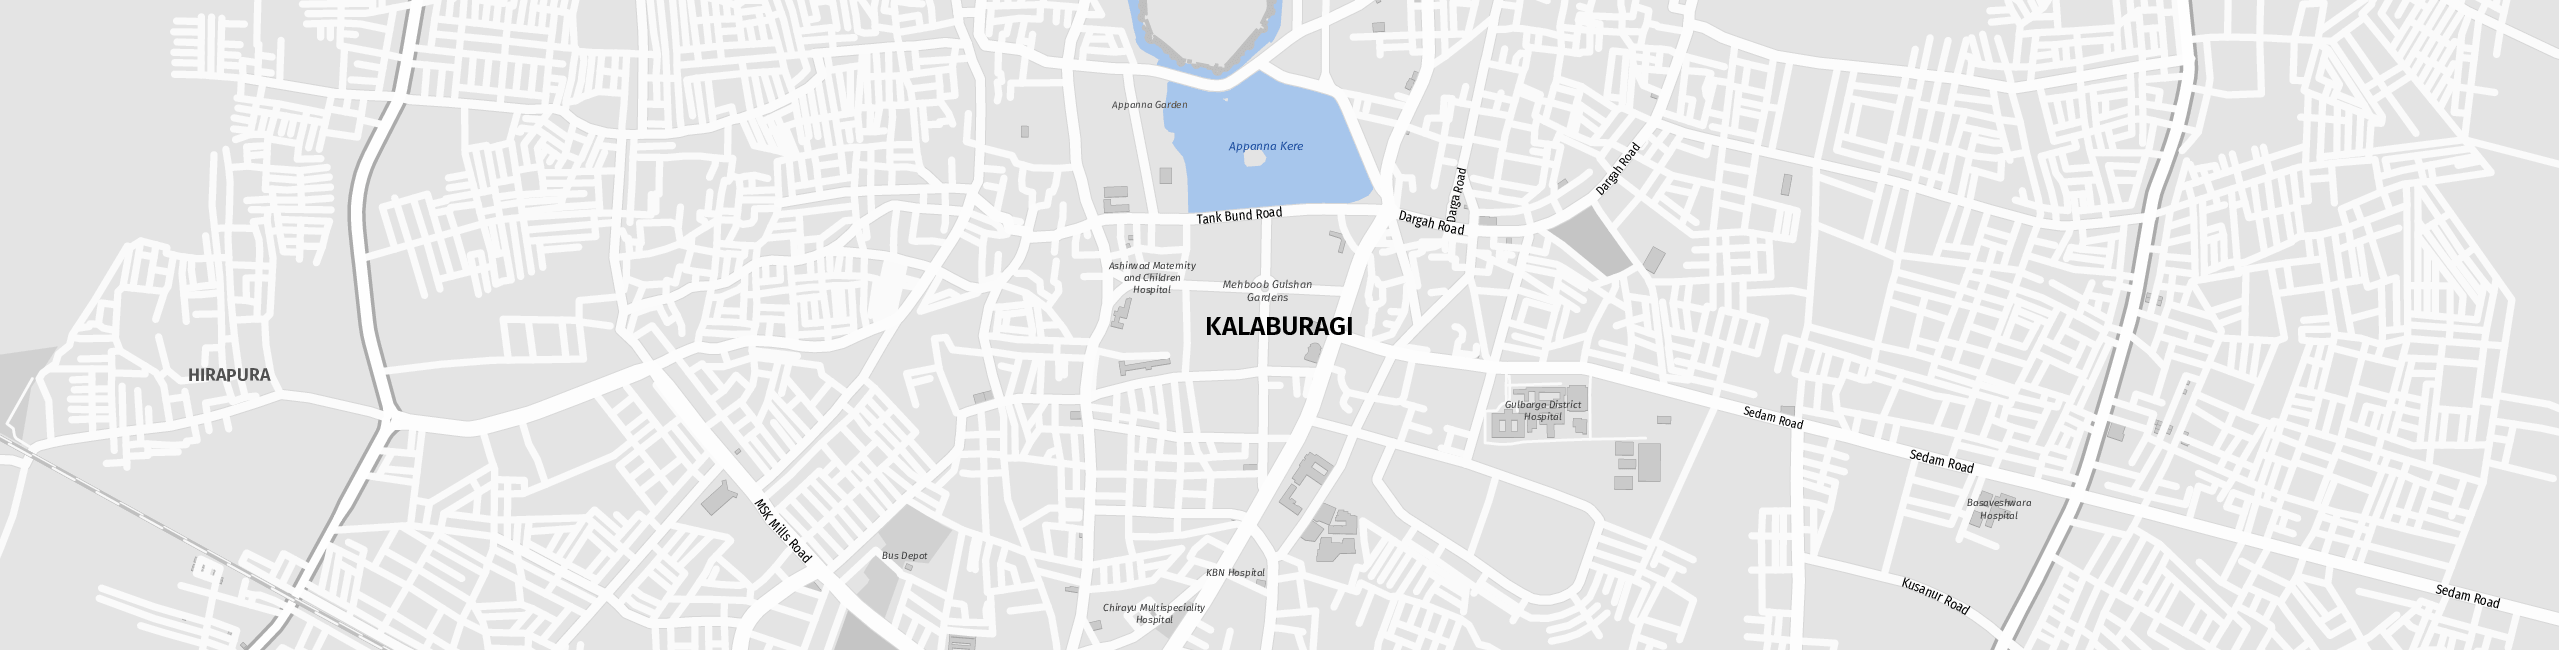 Stadtplan Kalaburagi zum Downloaden.